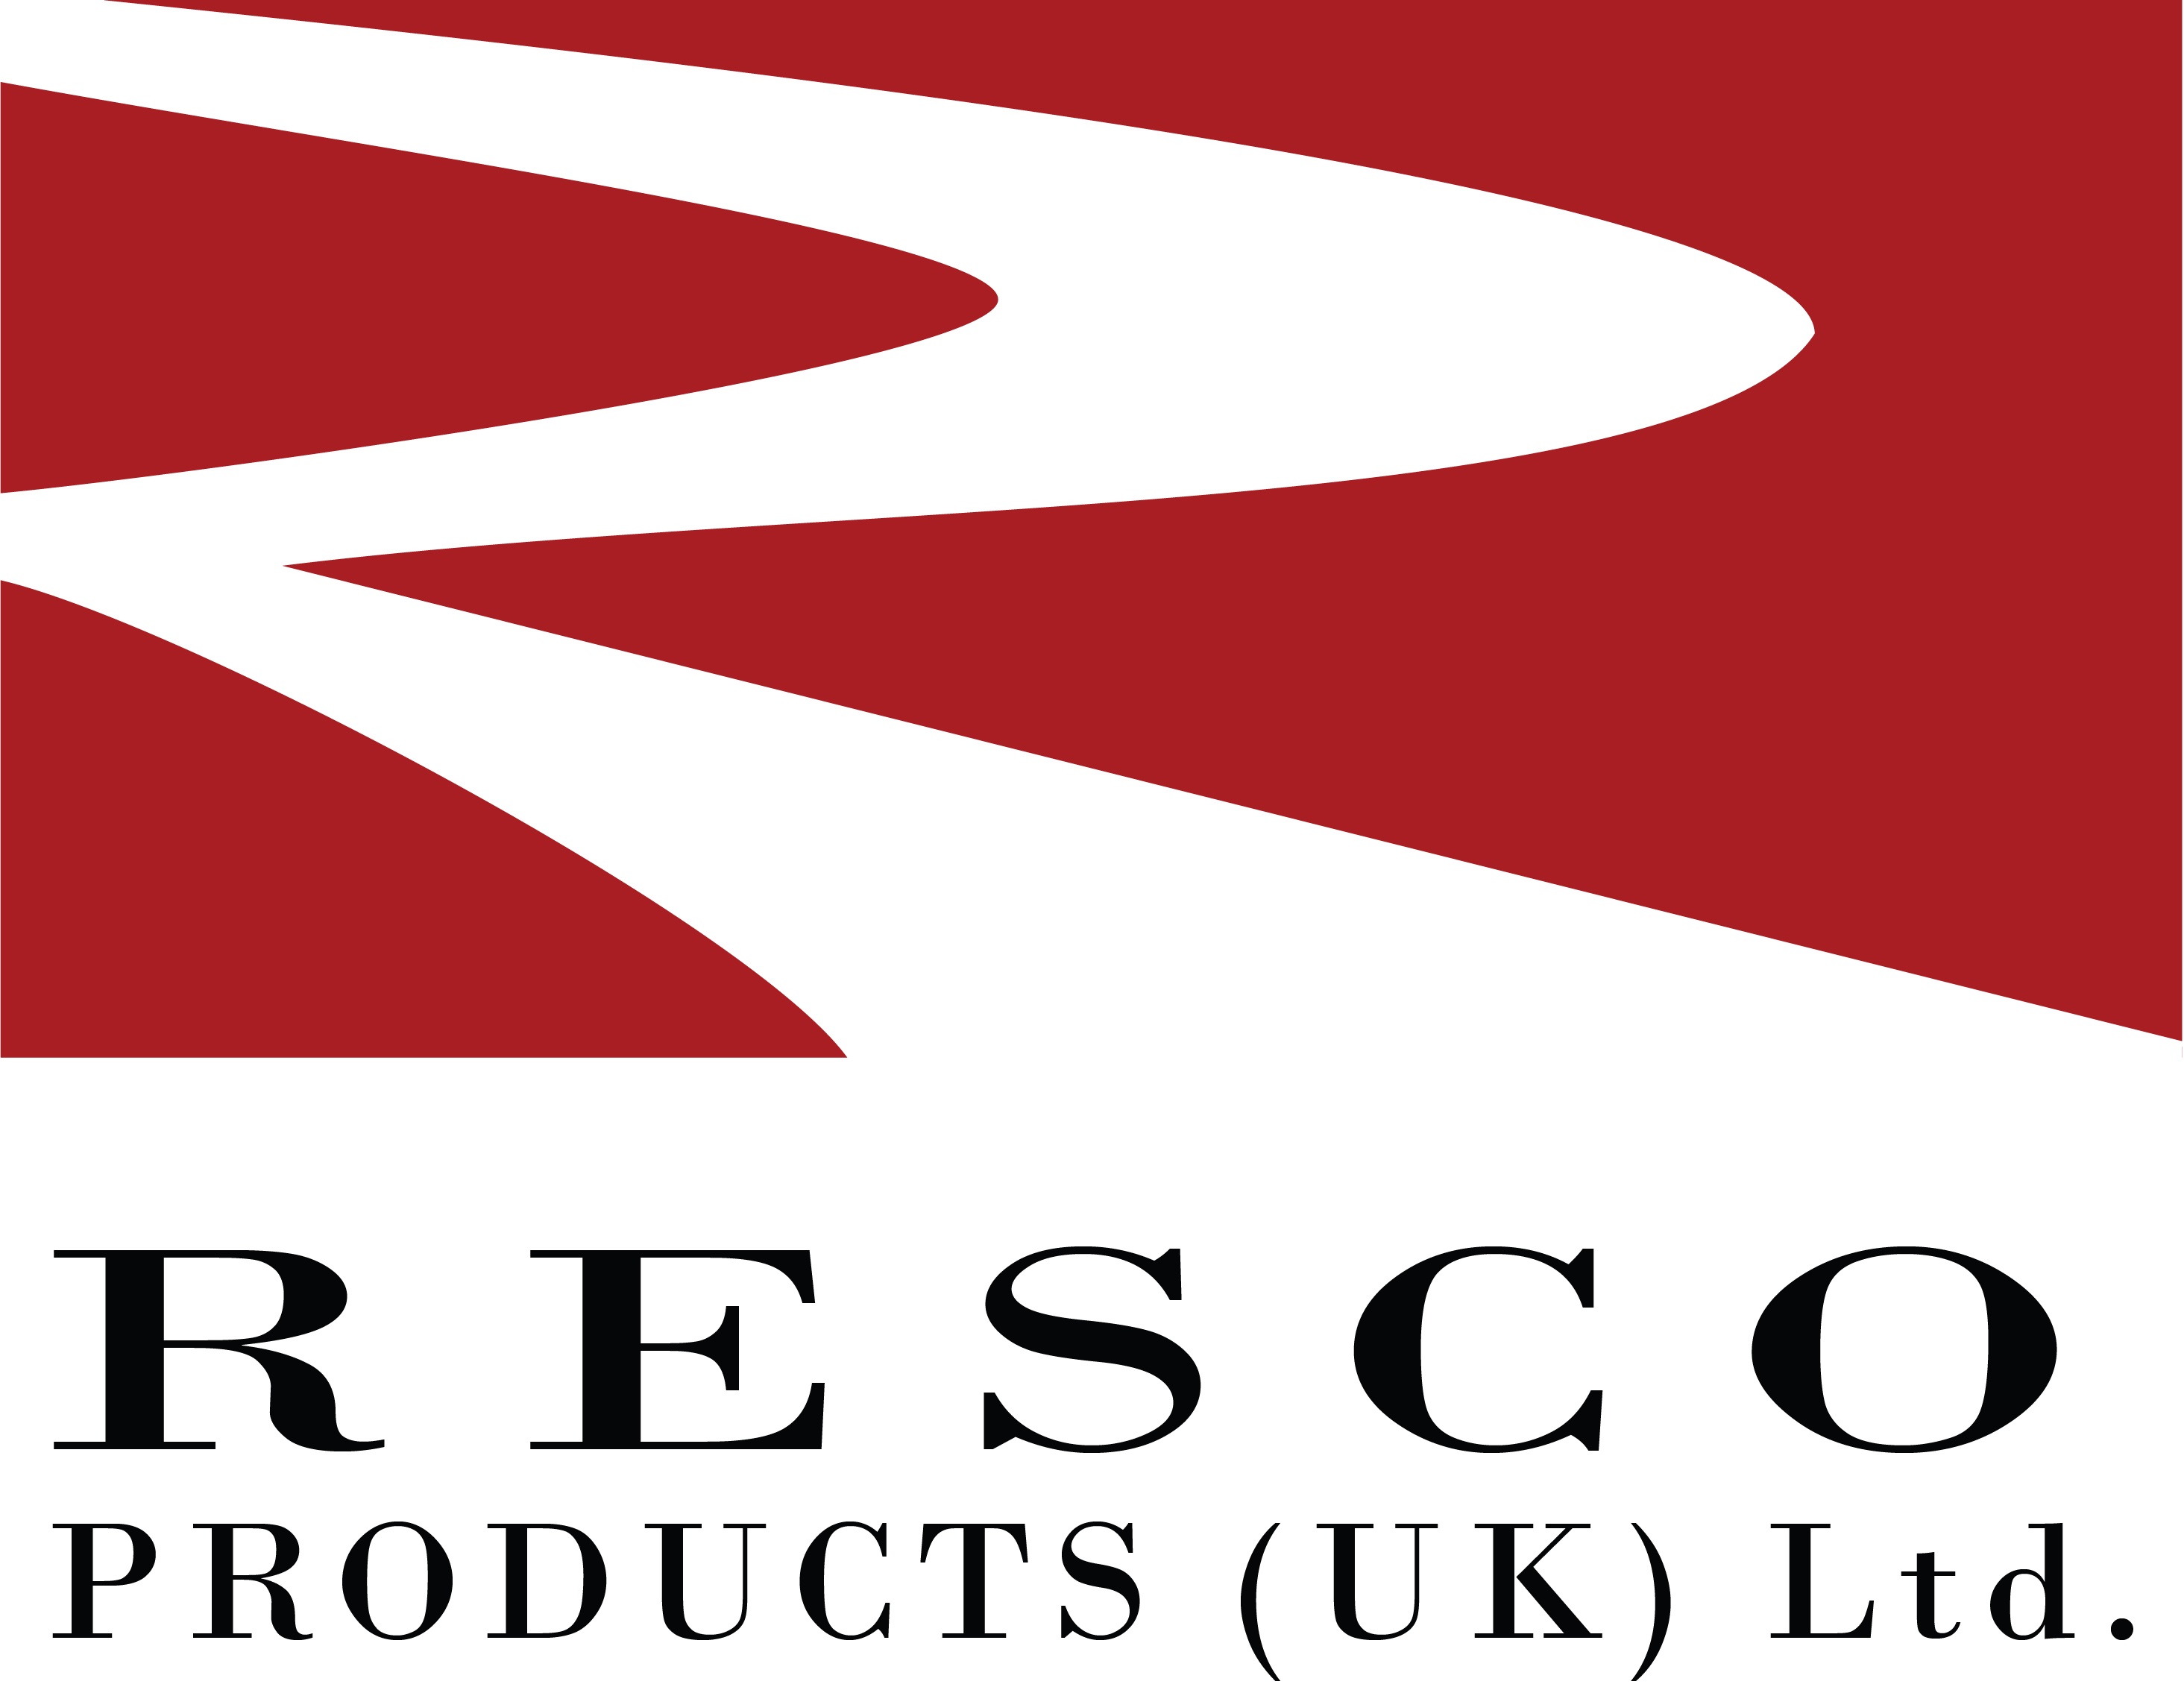 Resco Products (UK) Ltd